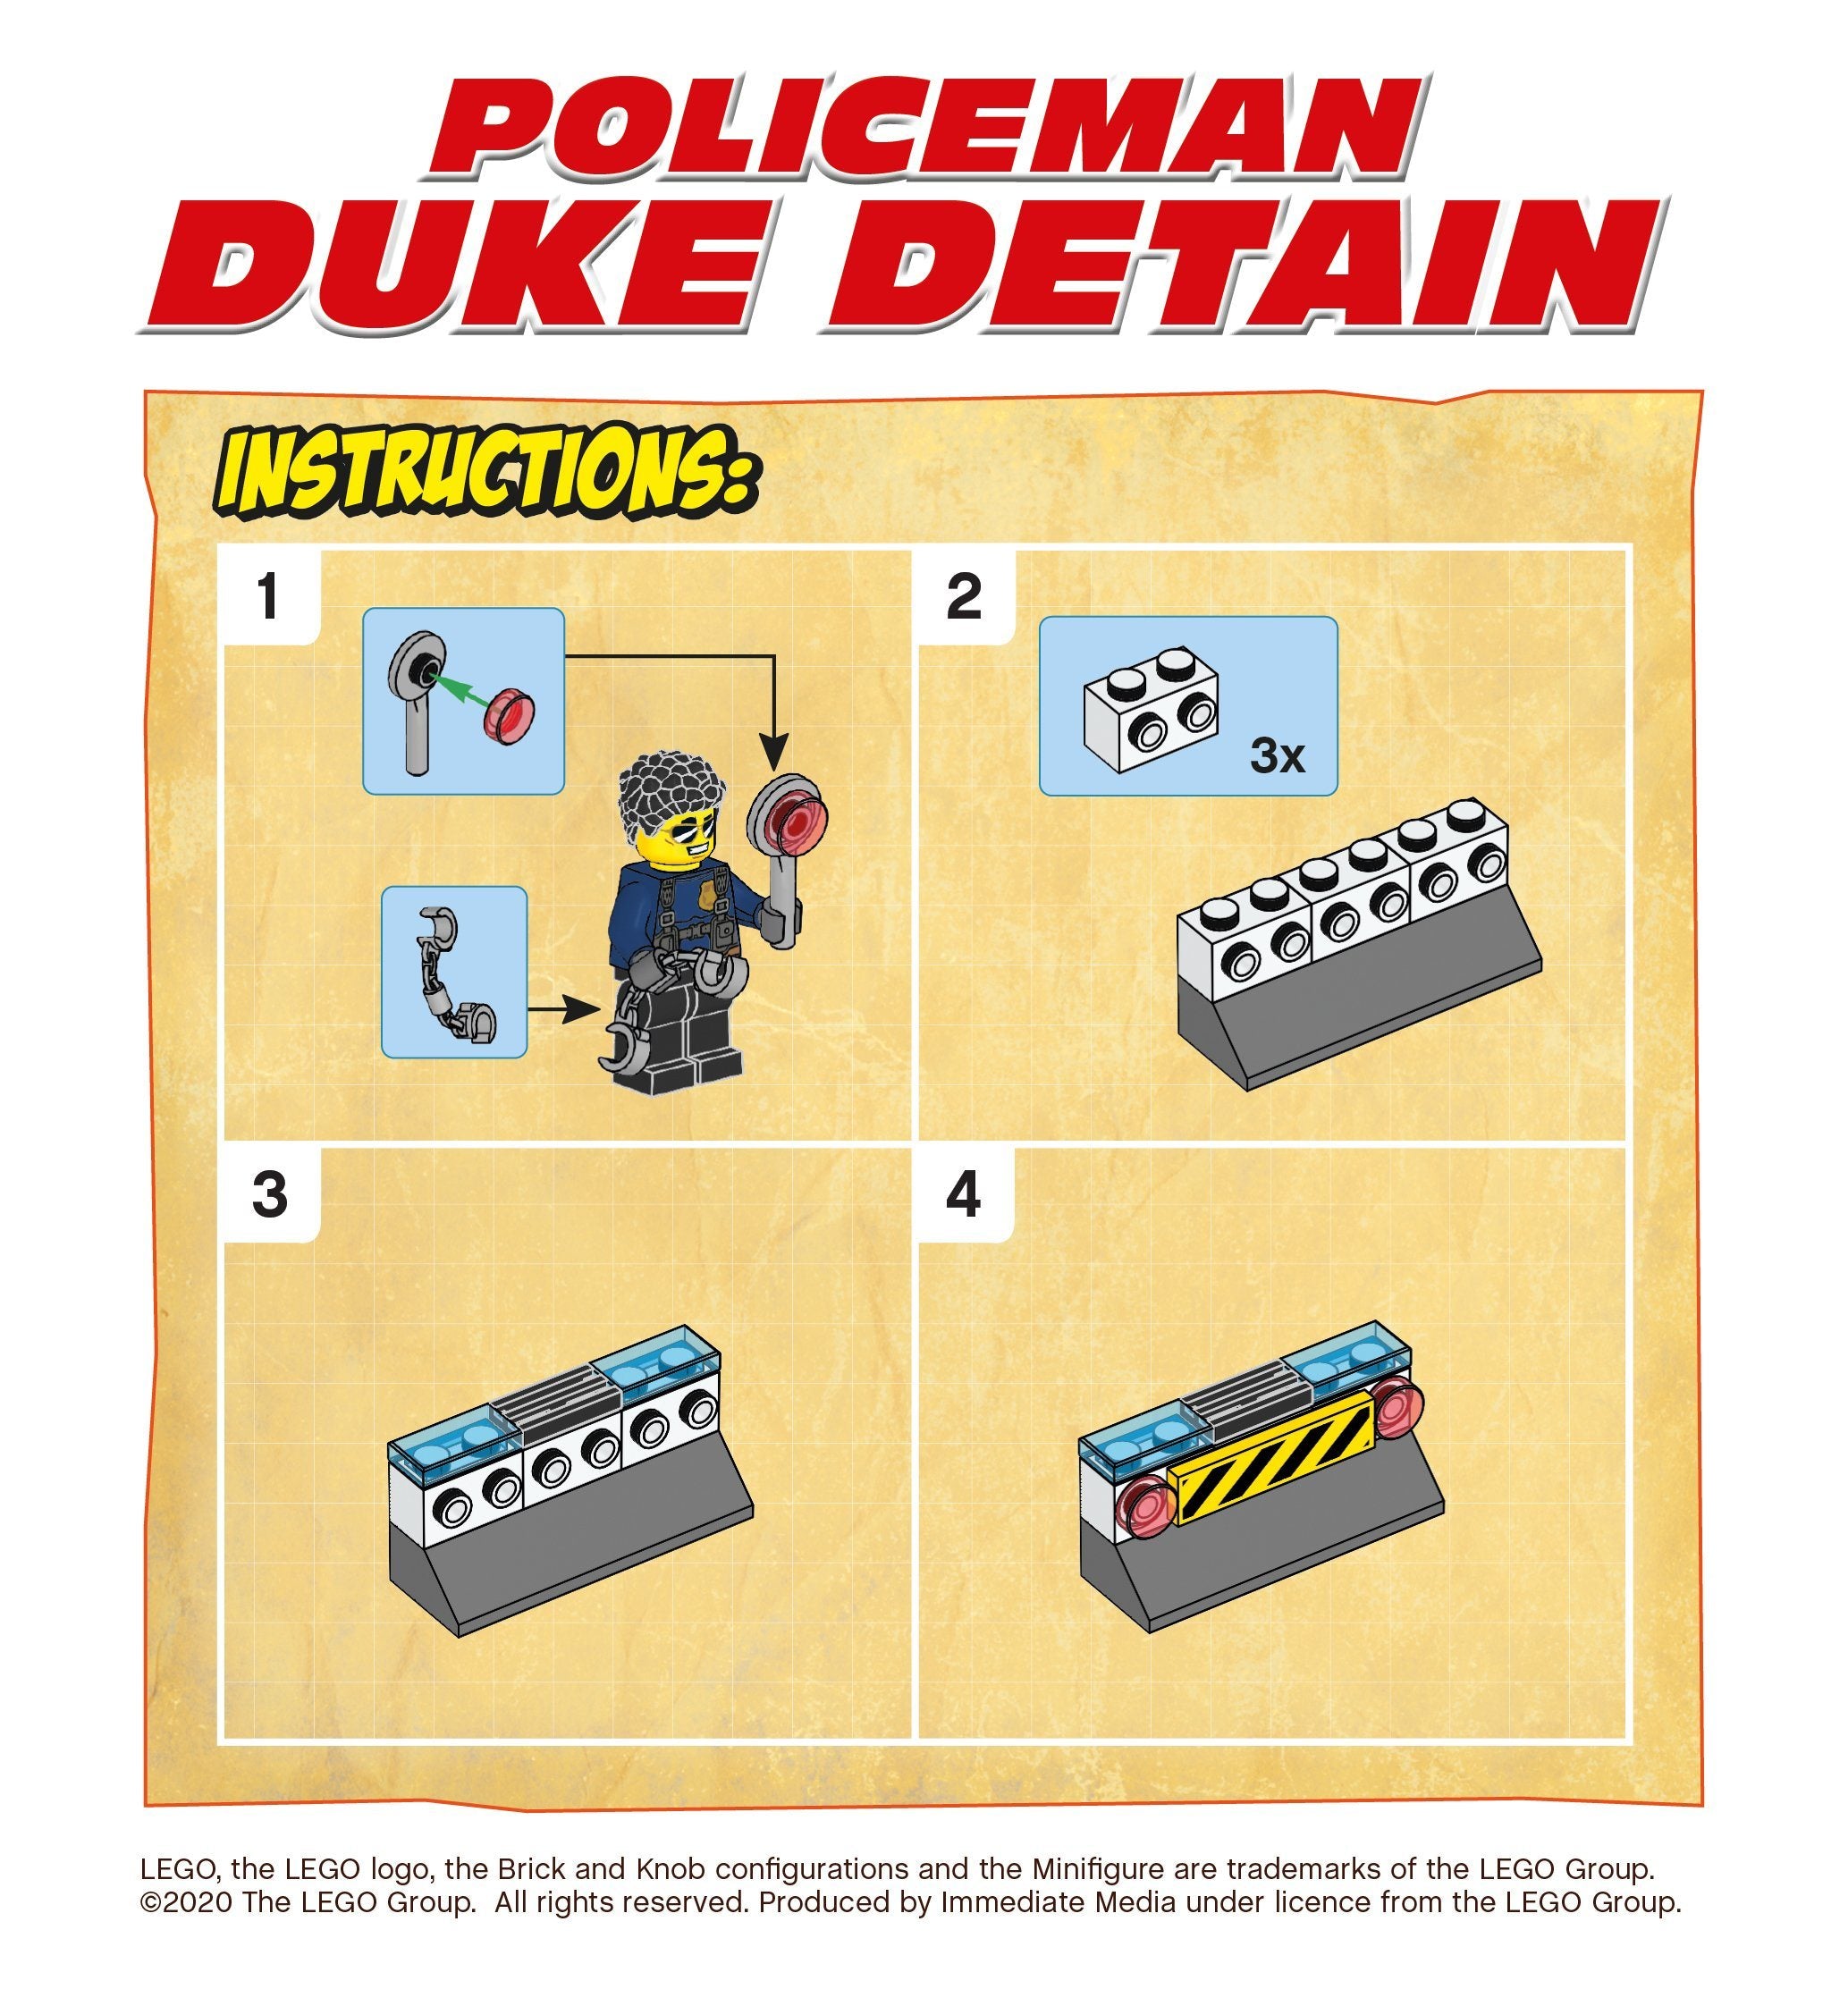 33 Duke Detain roadblock – Giggly